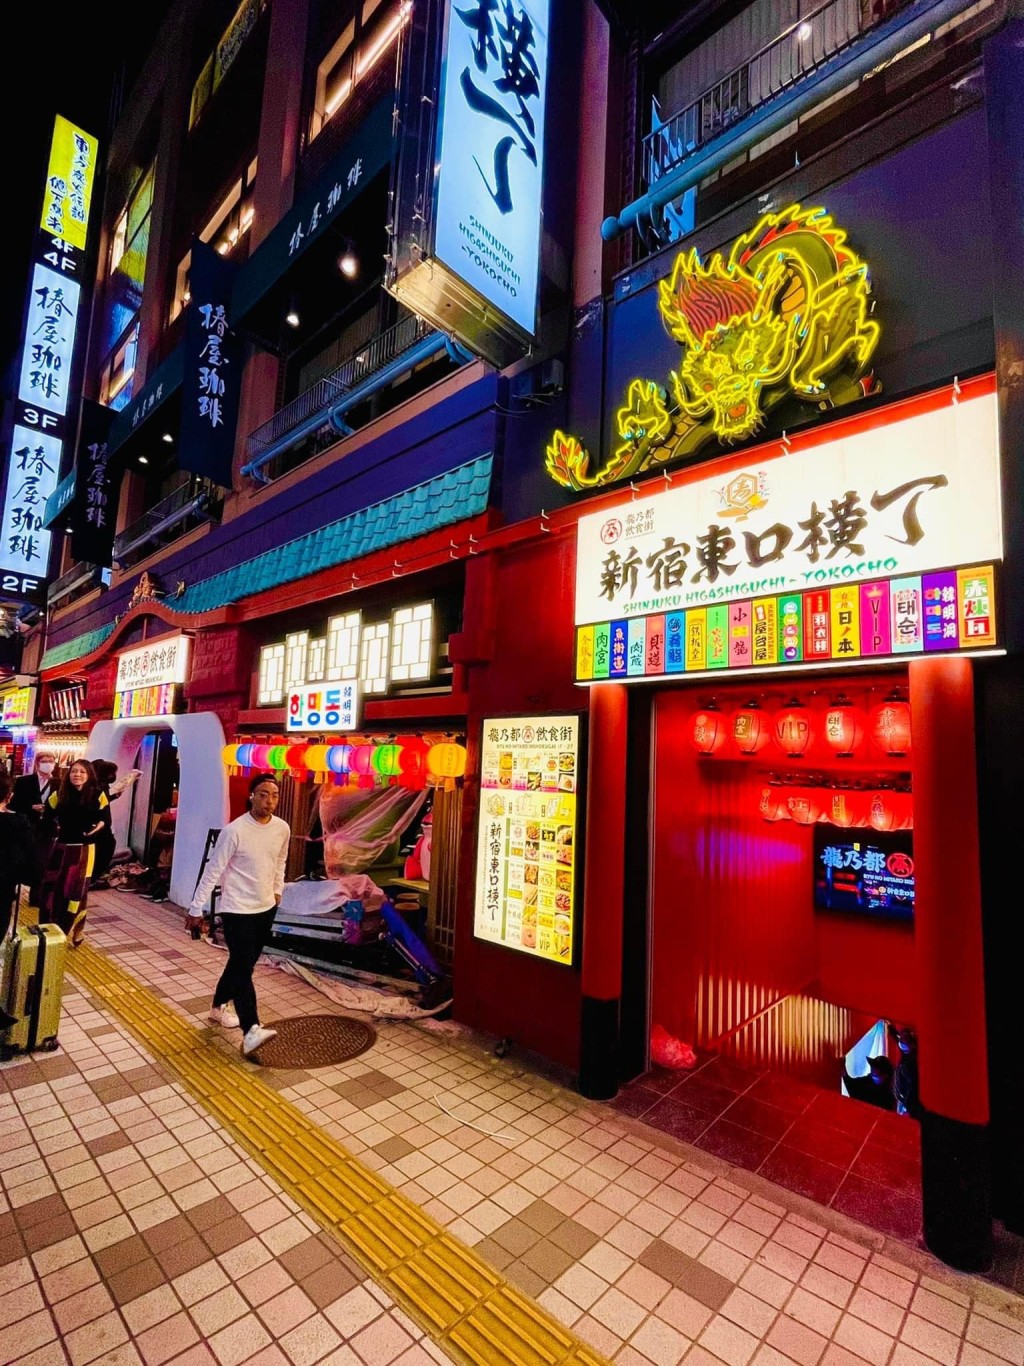 位于新宿三丁目的龙乃都饮食街，由各綫铁路新宿站徒步约1分钟可达。